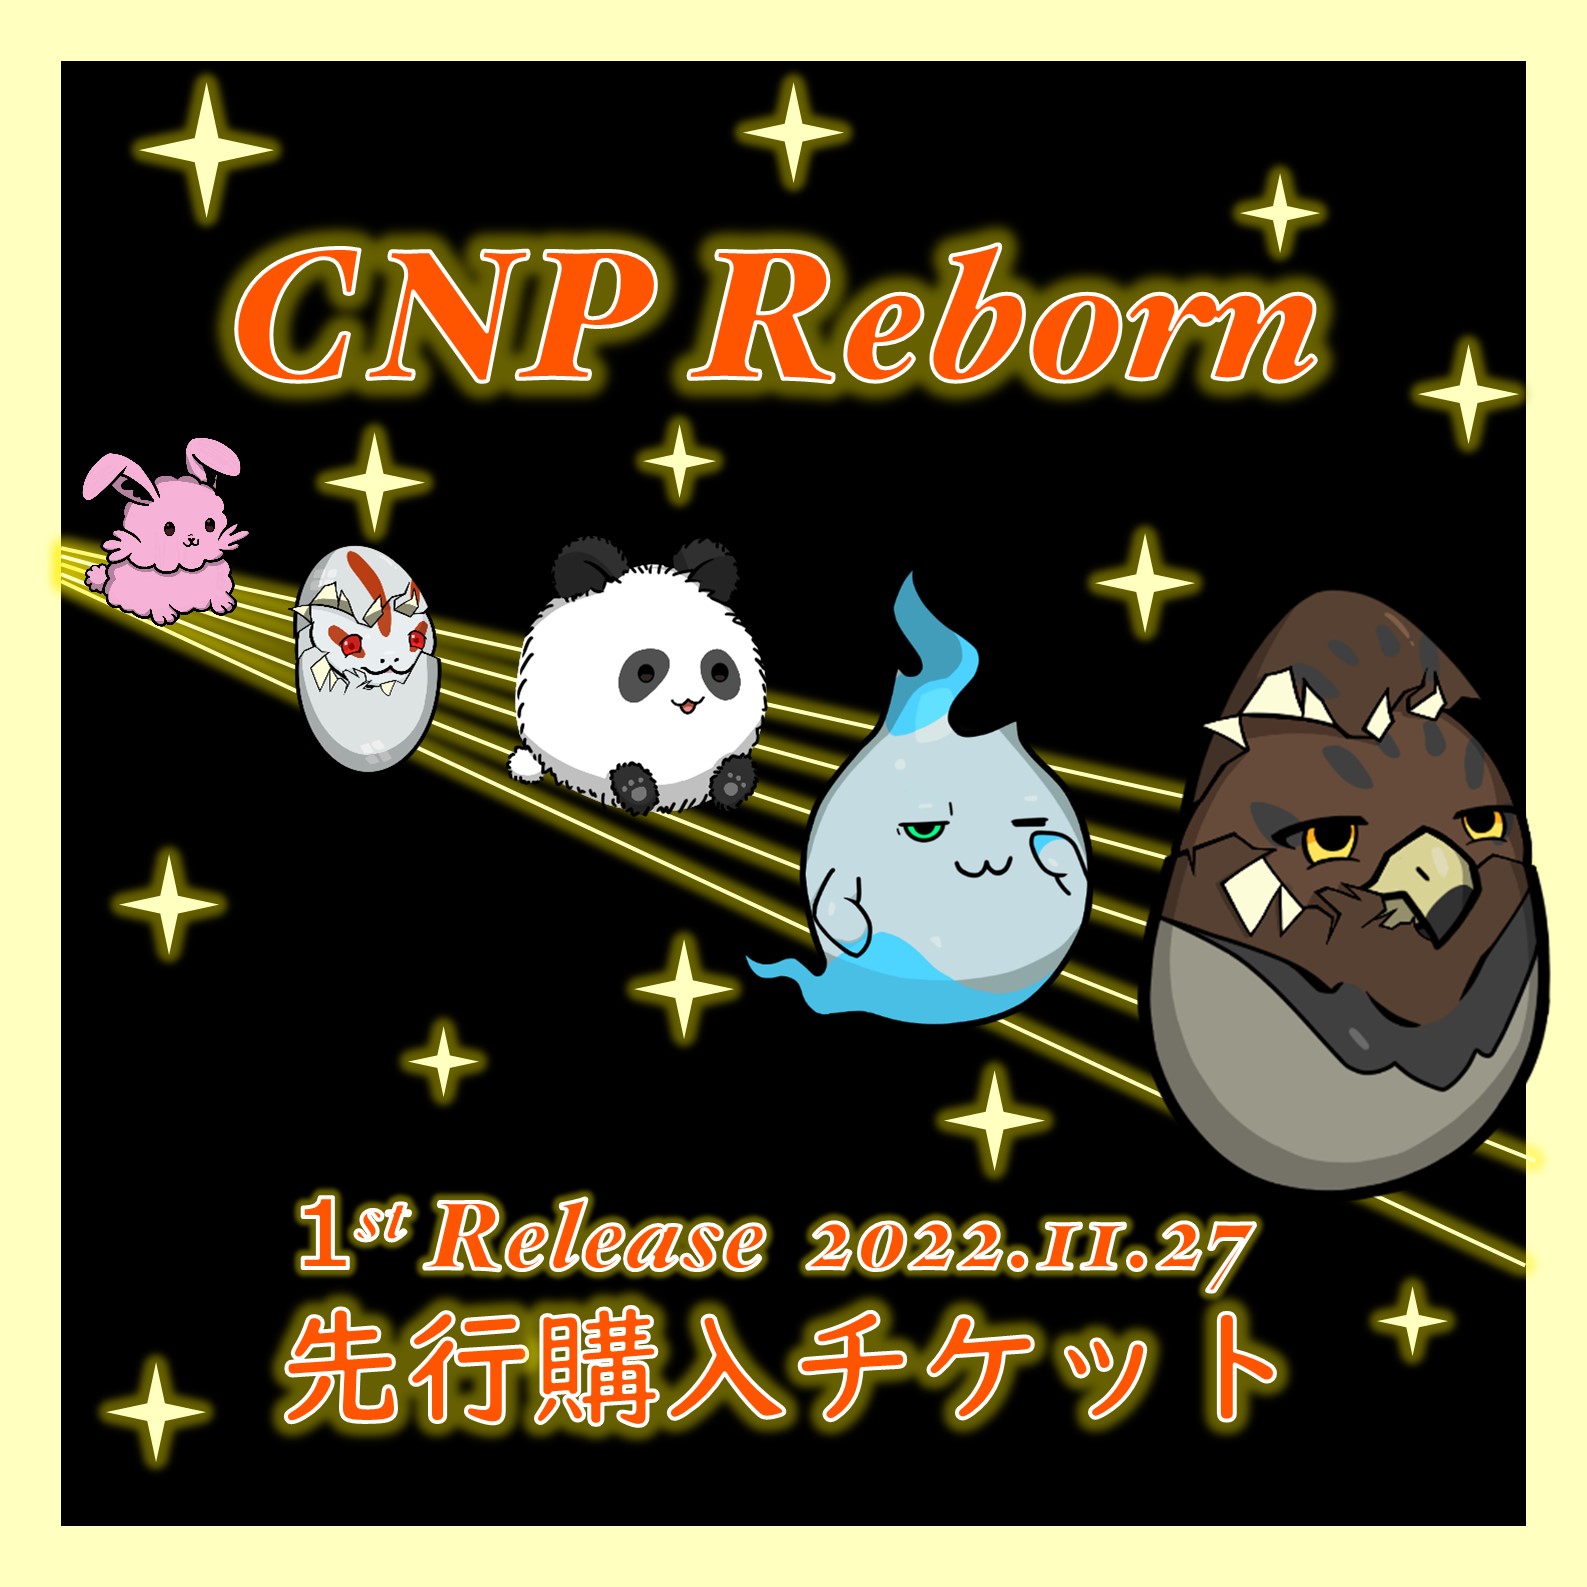 CNP Reborn 1st Release AL Holder